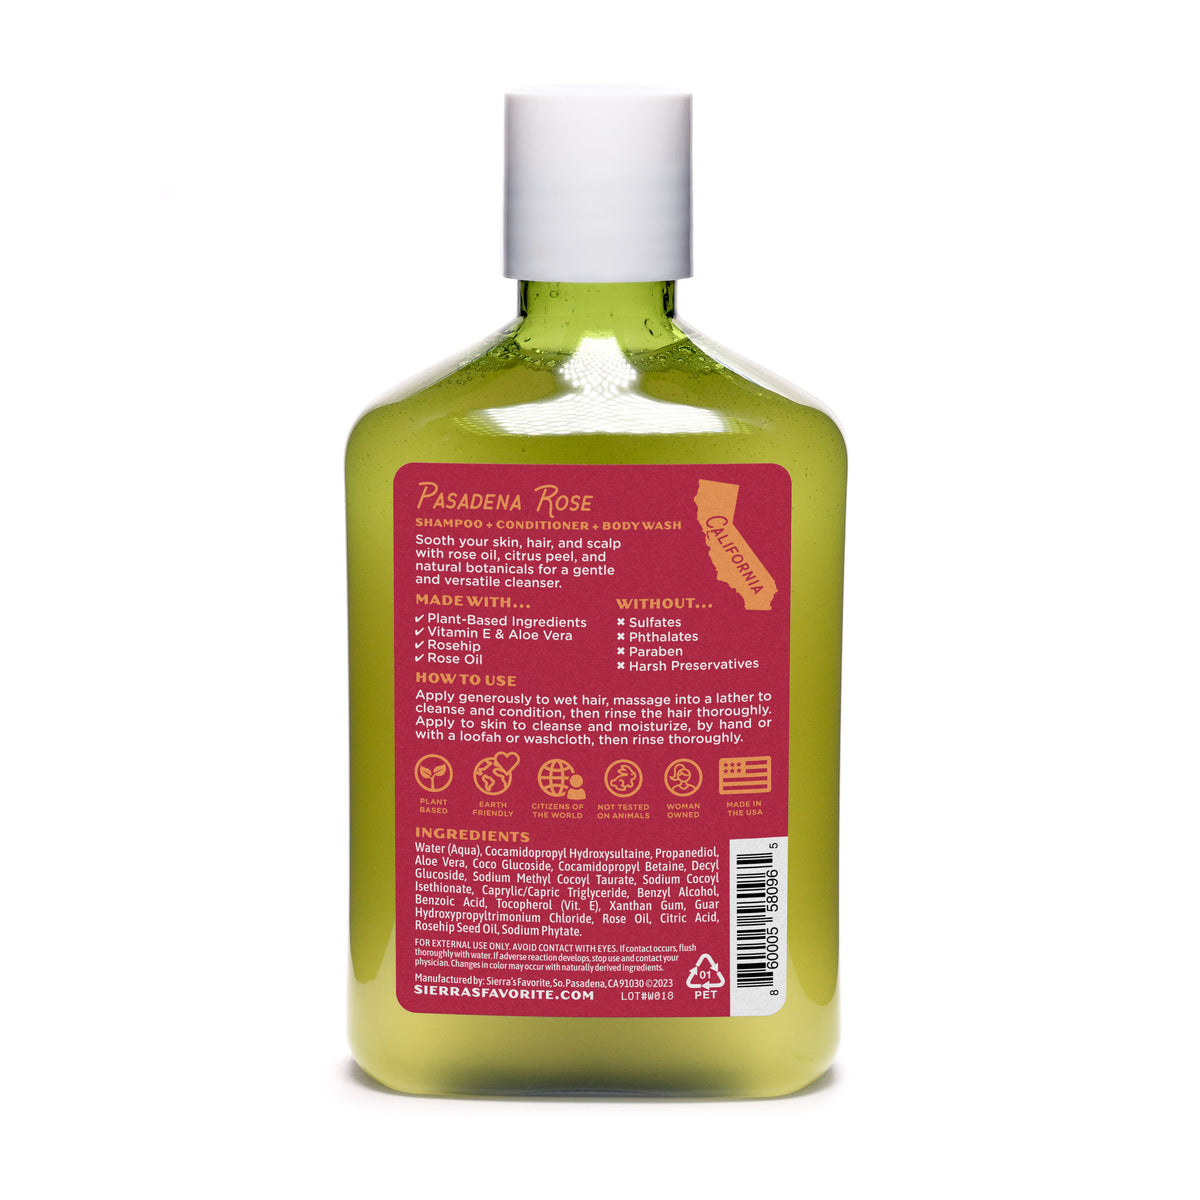 Pasadena Rose (3-in-1) Shampoo &amp; Body Wash (12 oz)